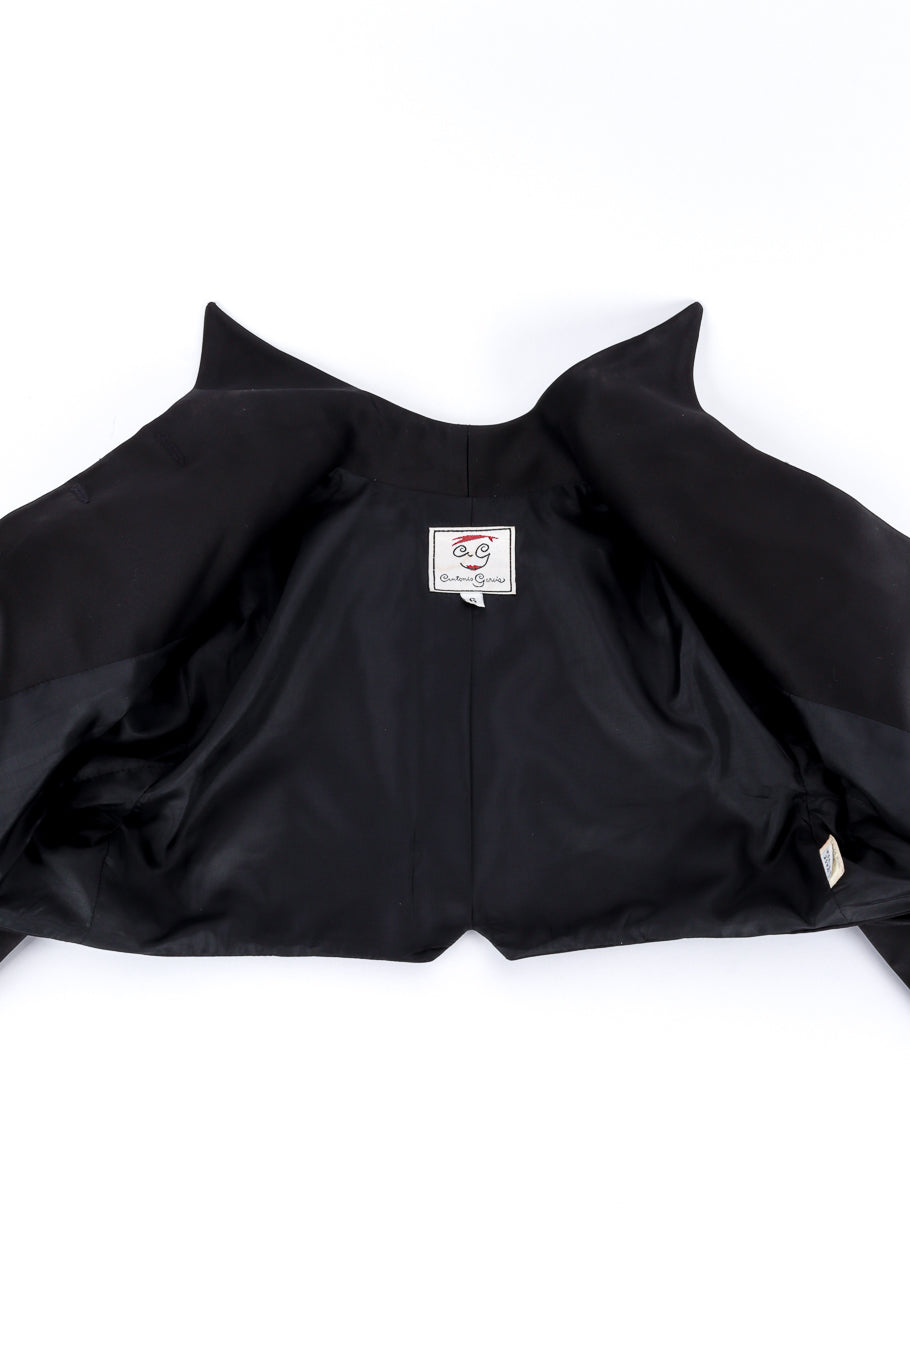 Vintage Antonio Garcia Pointed Bolero Jacket view of lining @recess la